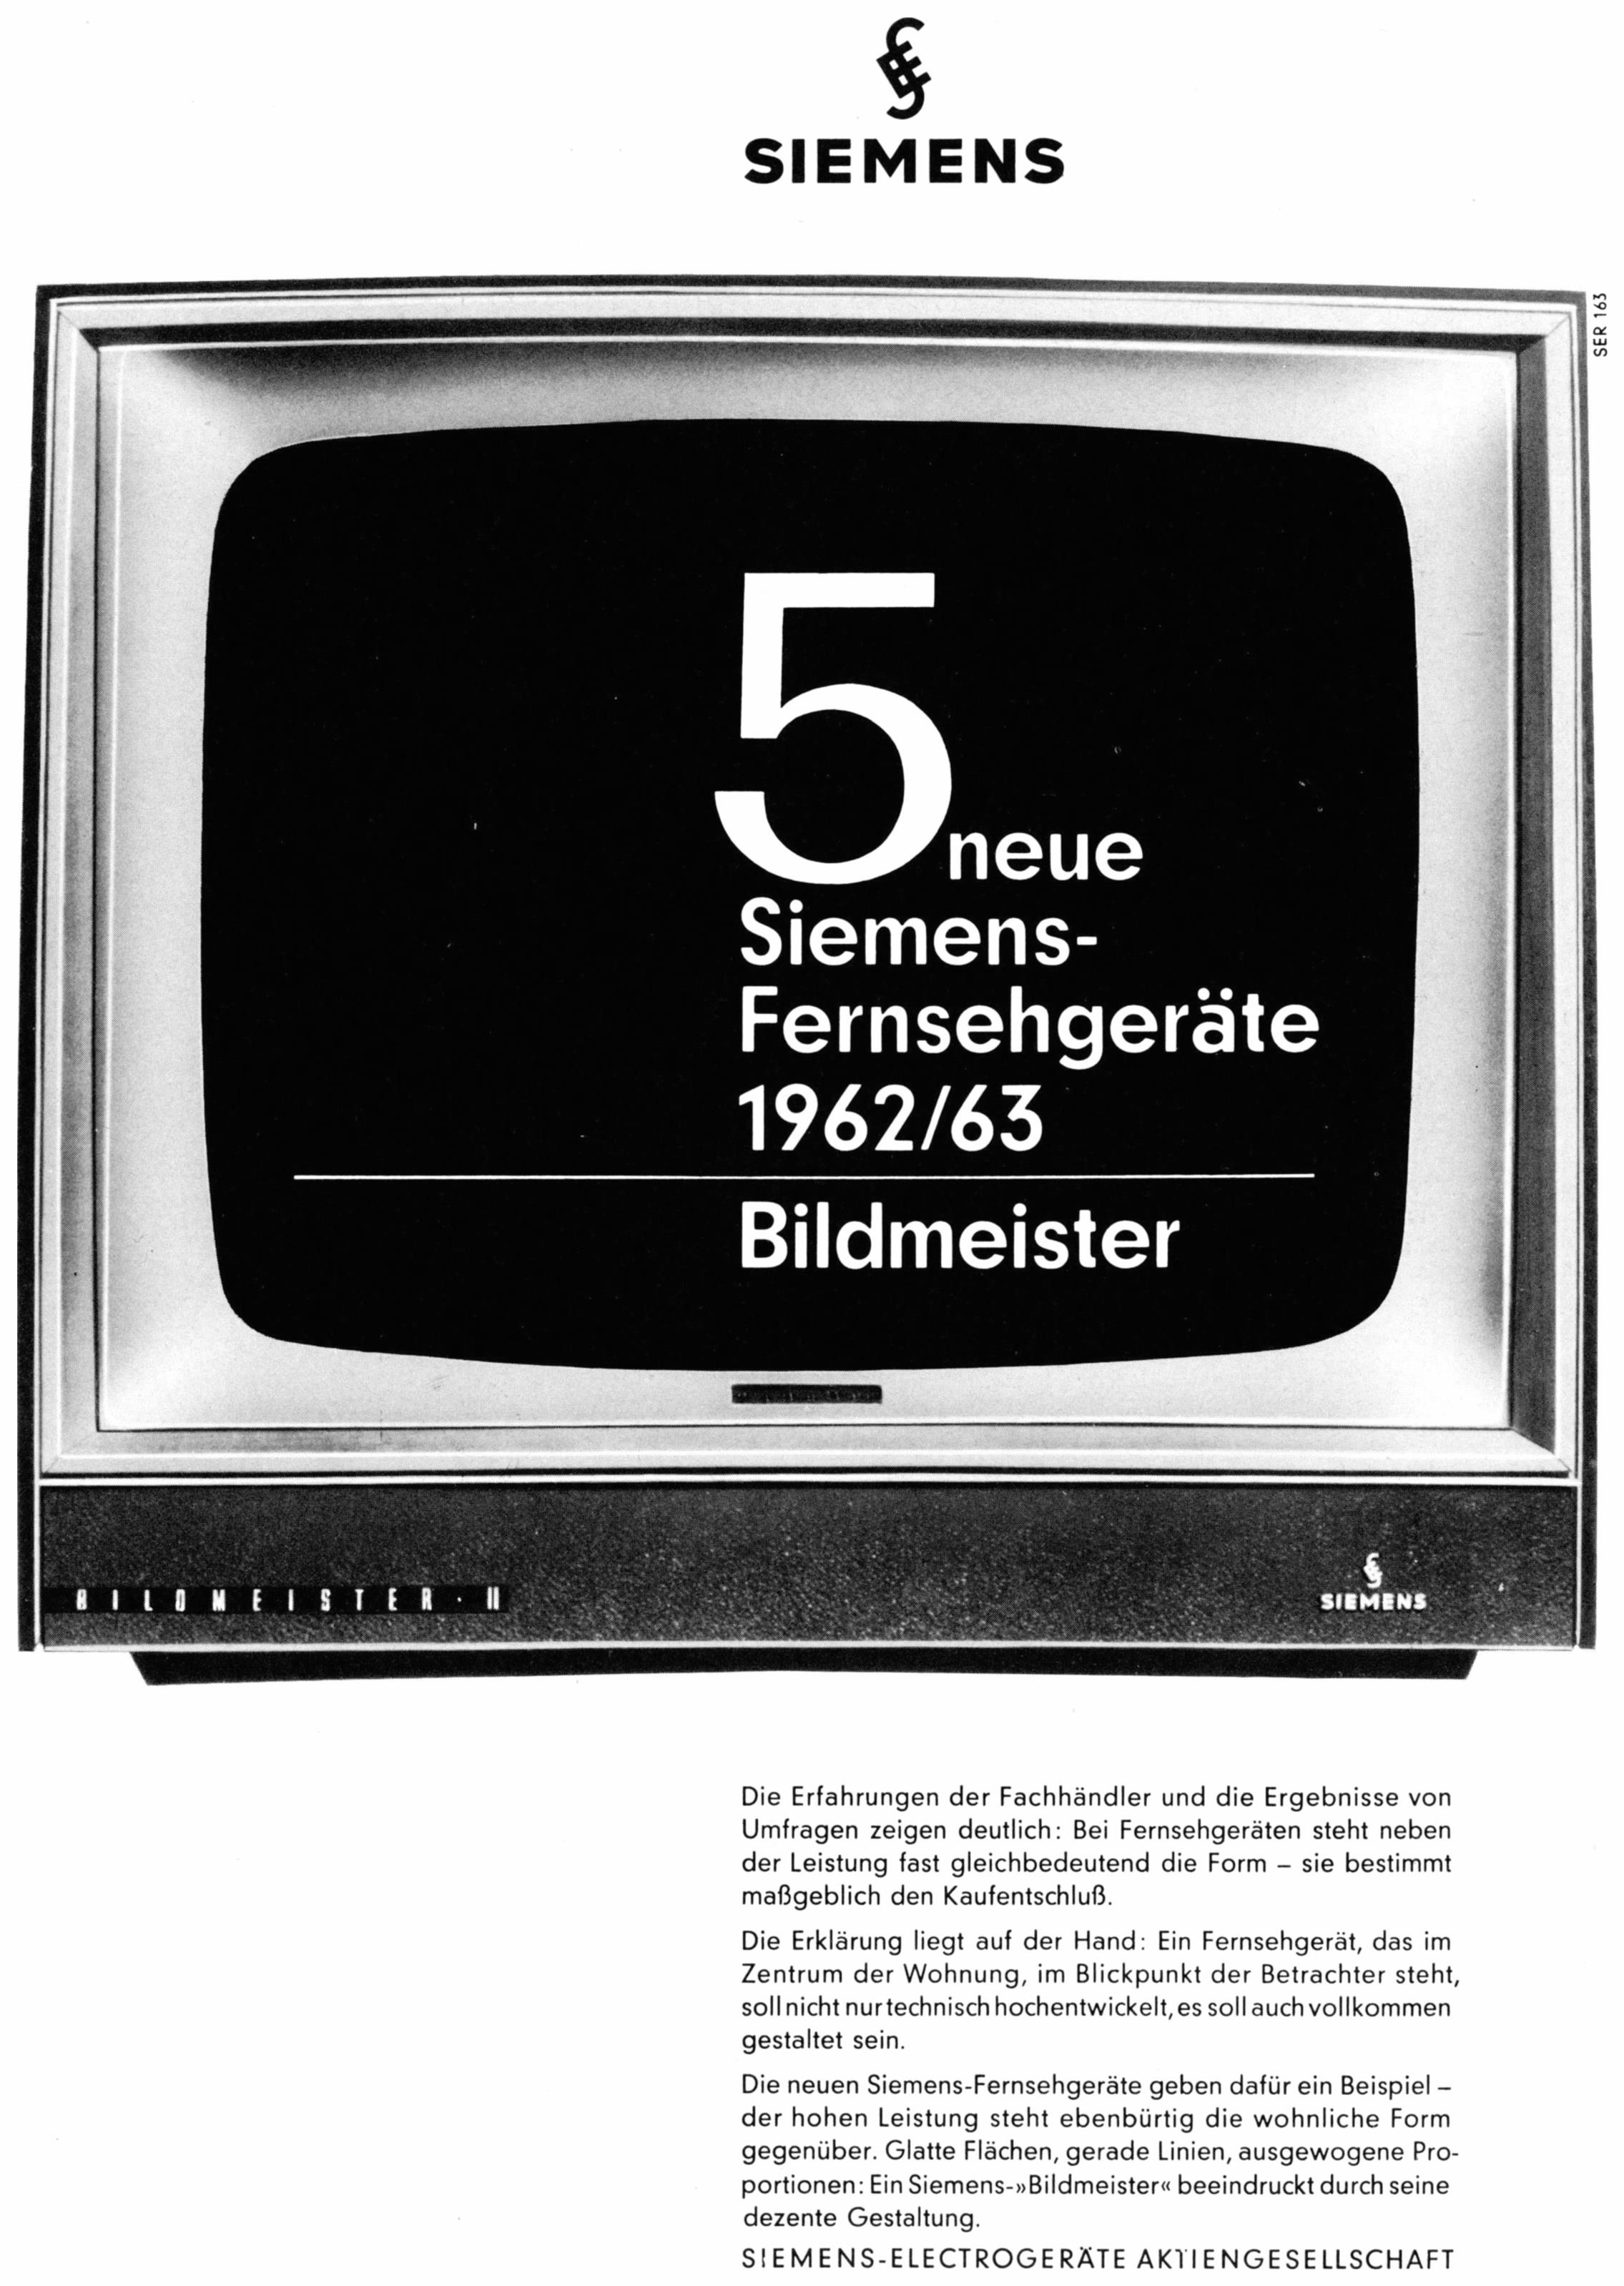 Siemens 1962 0.jpg